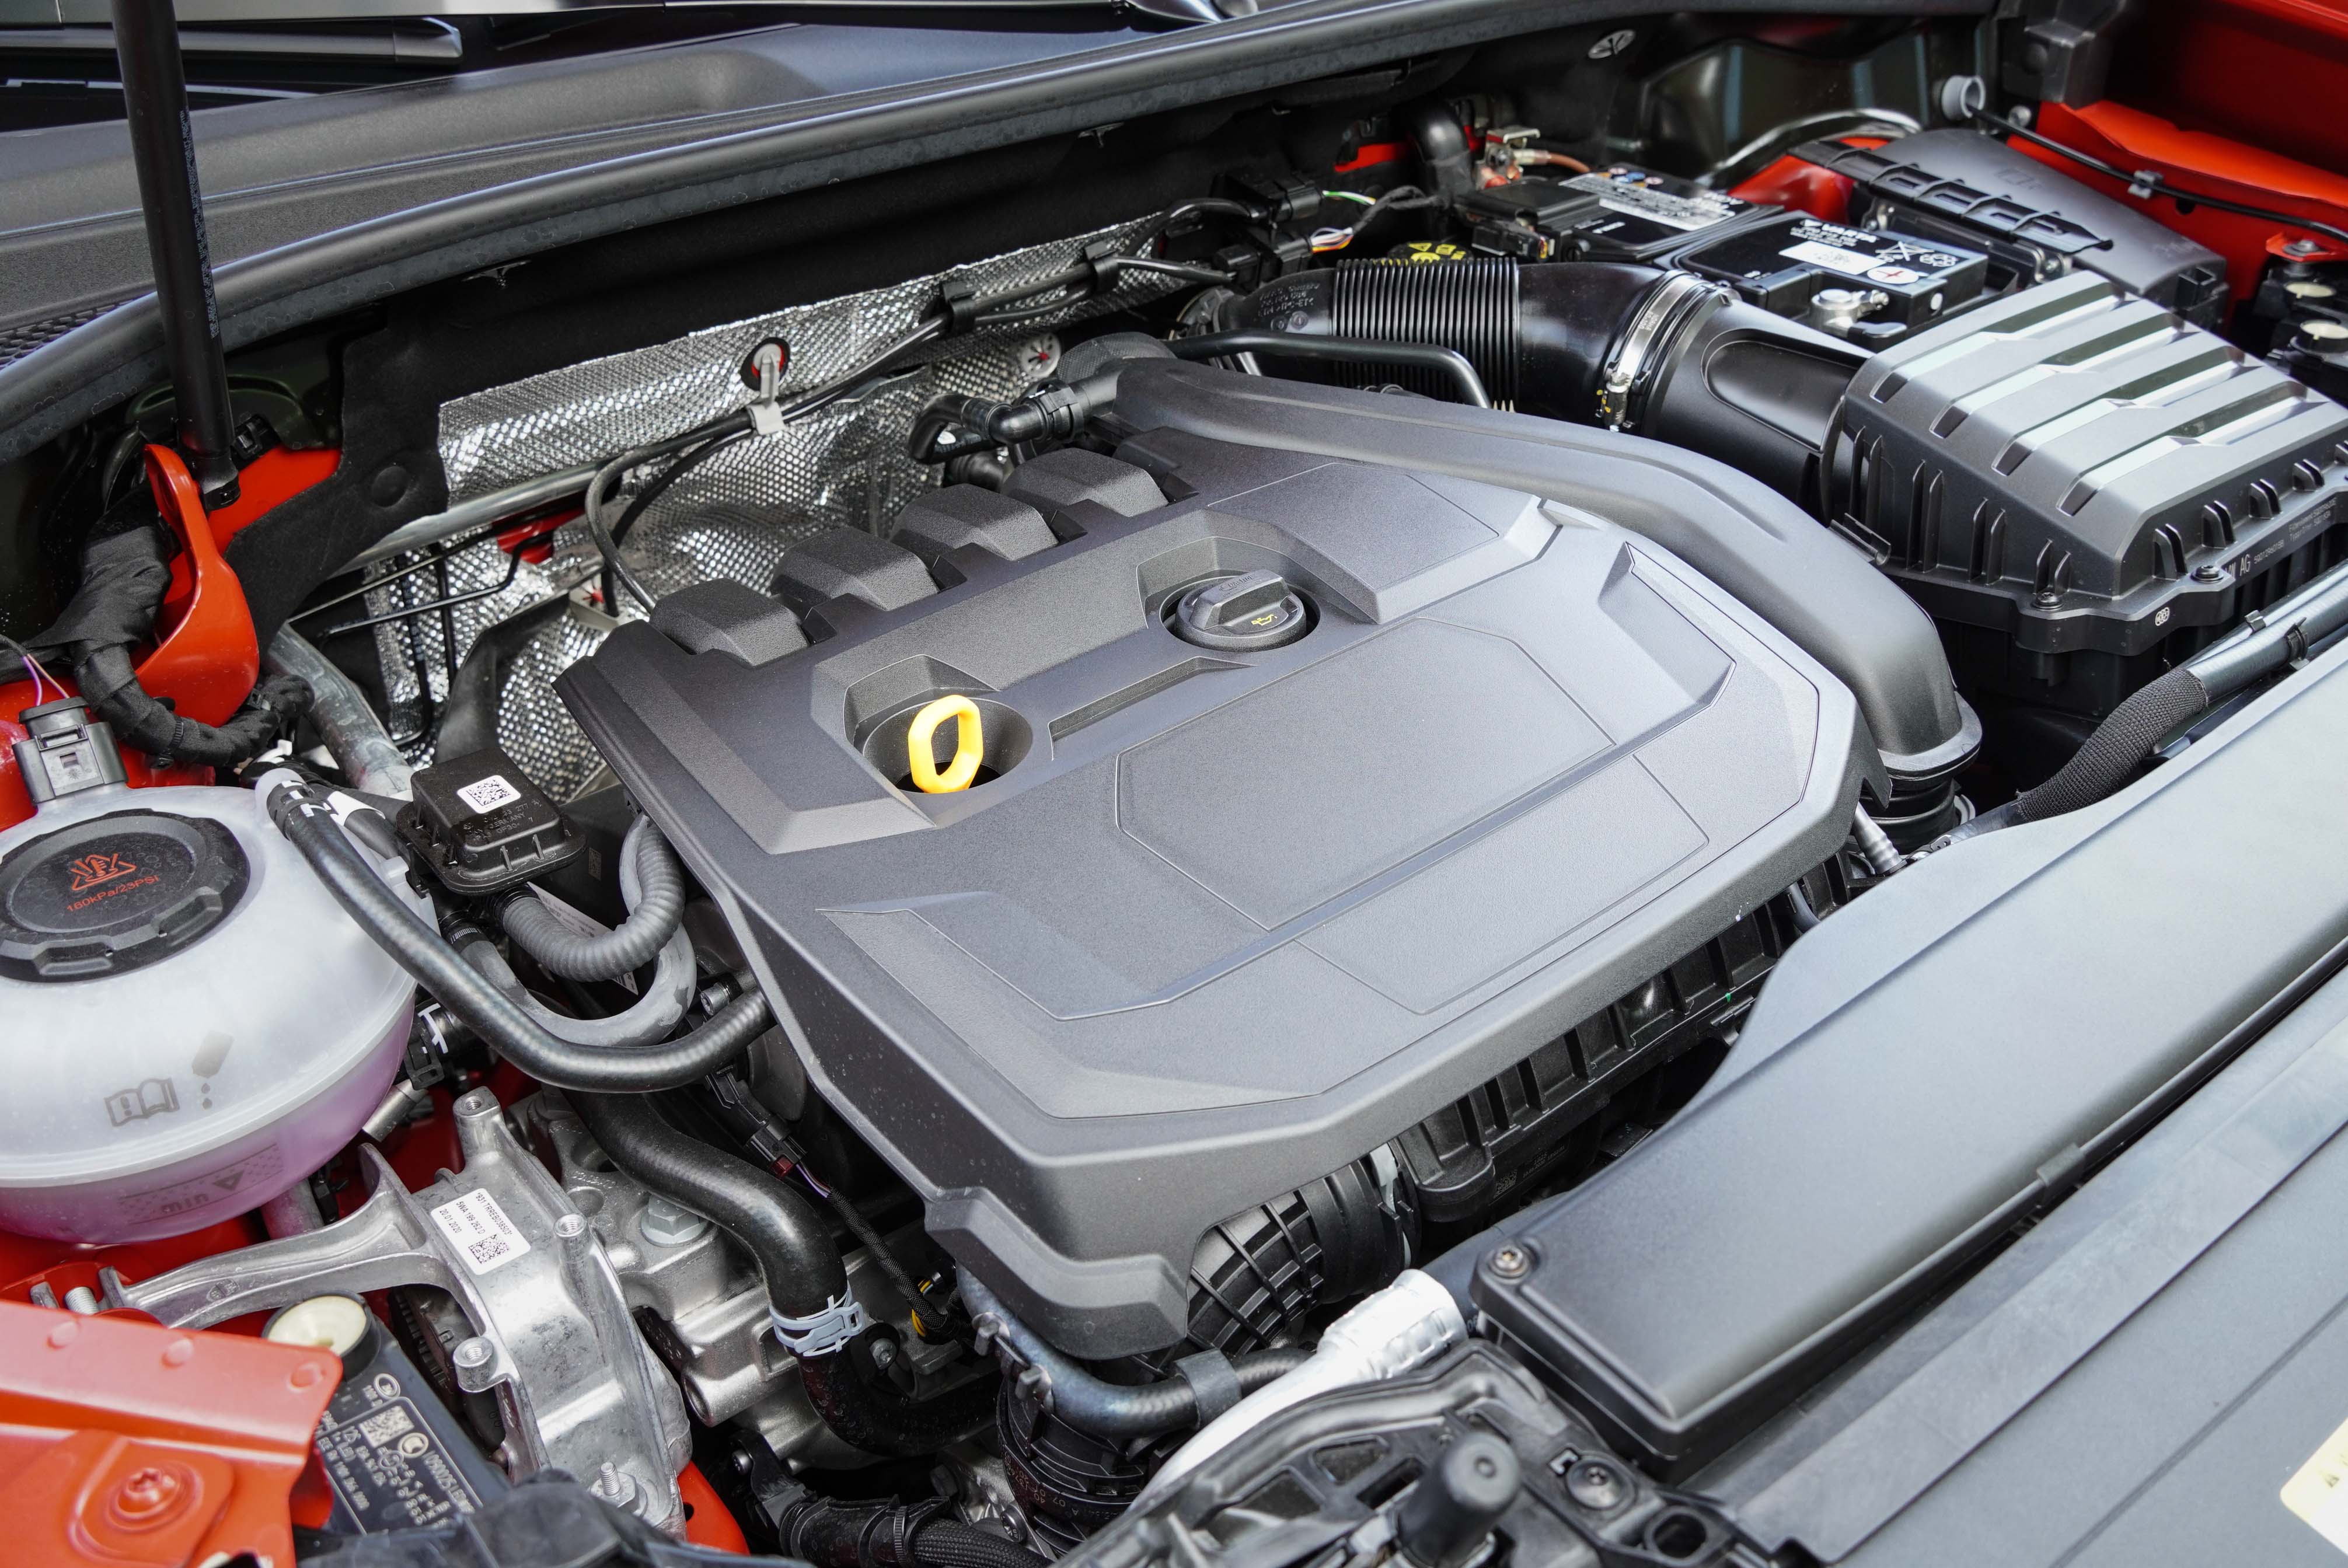 35 TFSI 採用 L4 汽油渦輪增壓引擎搭配 48V 輕型複合動力系統。